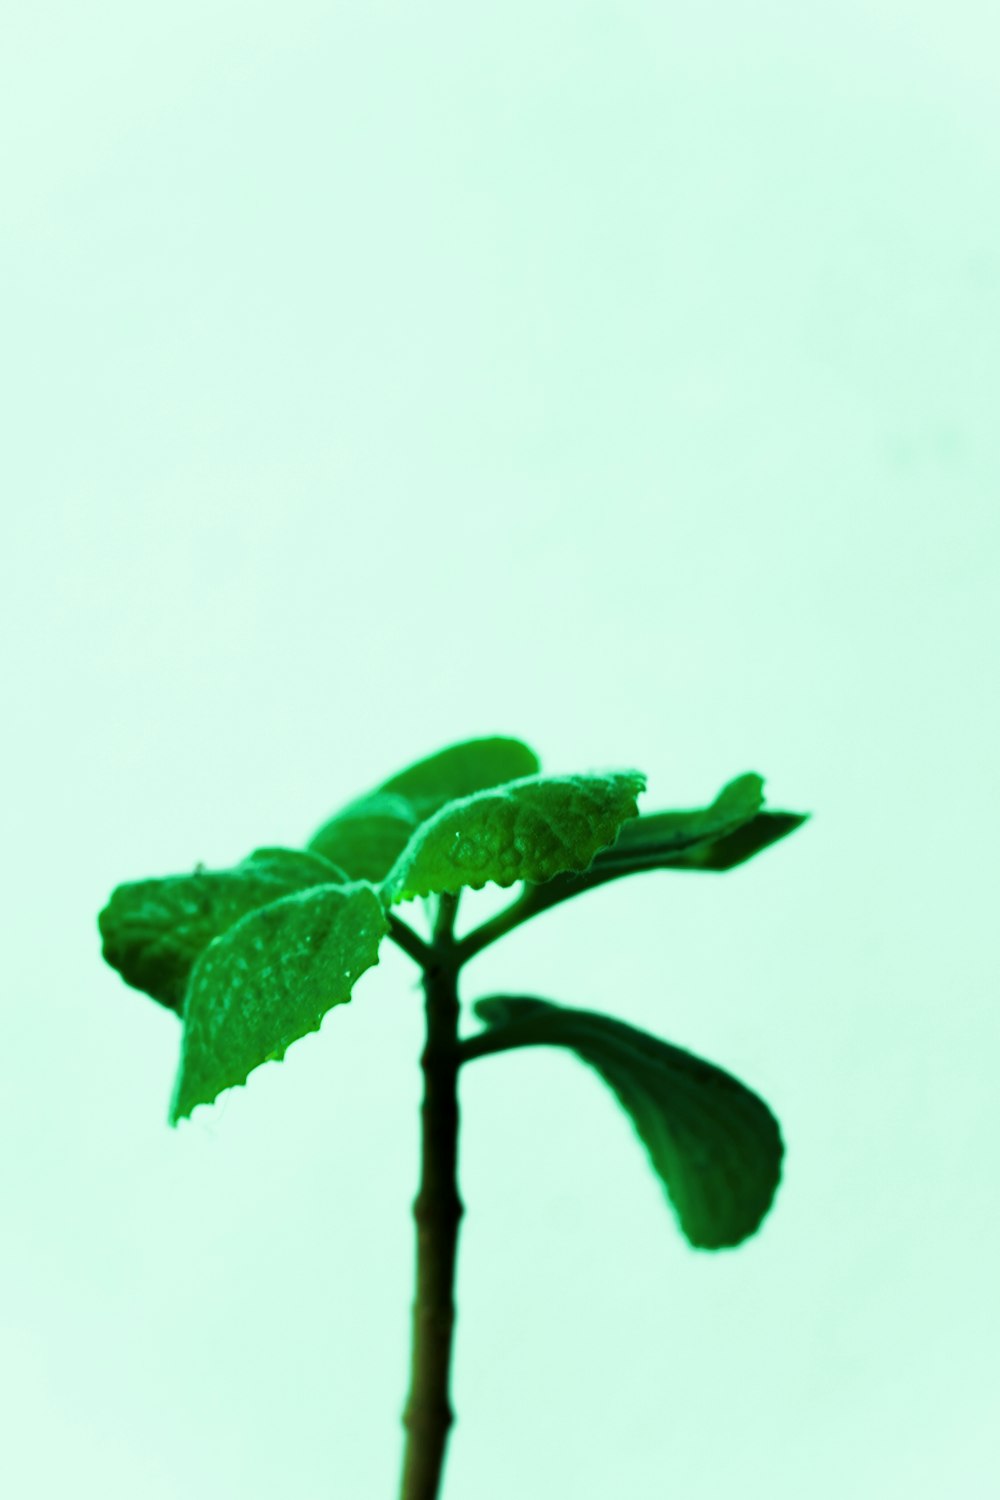 uma pequena planta verde com folhas sobre ela